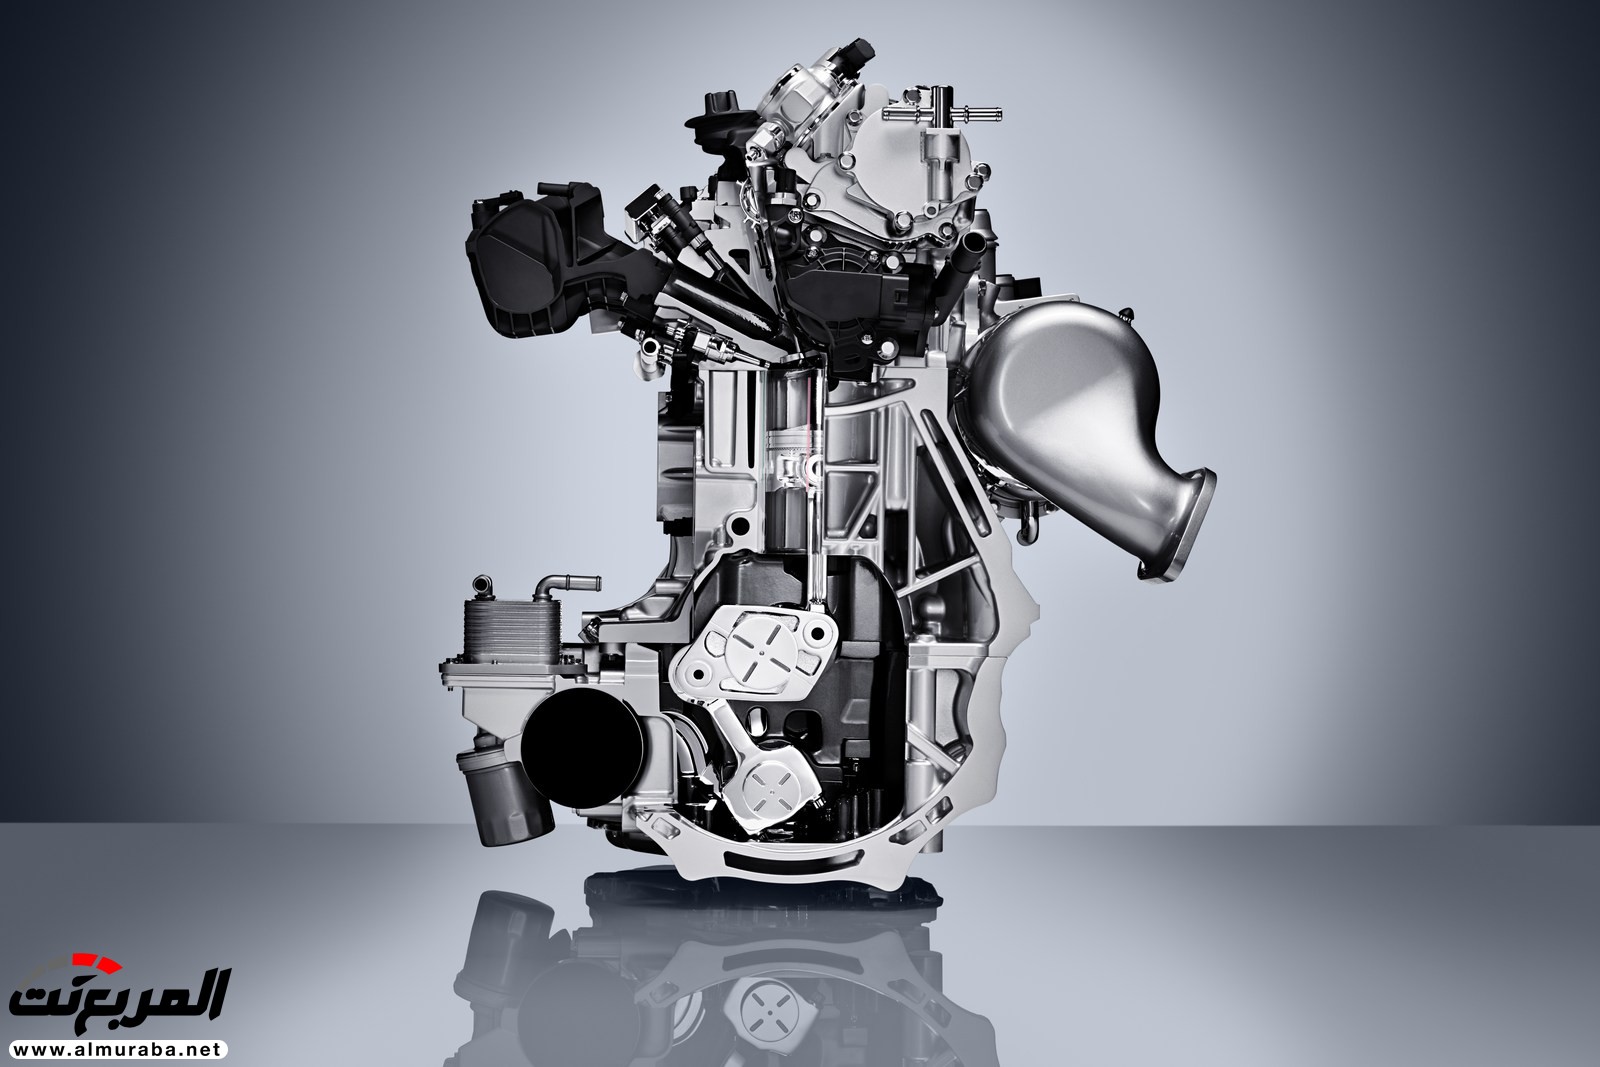 إنفينيتي QX50 الجديدة كلياً 2019 تظهر رسمياً بمحرك هو الأكثر تطوراً 27